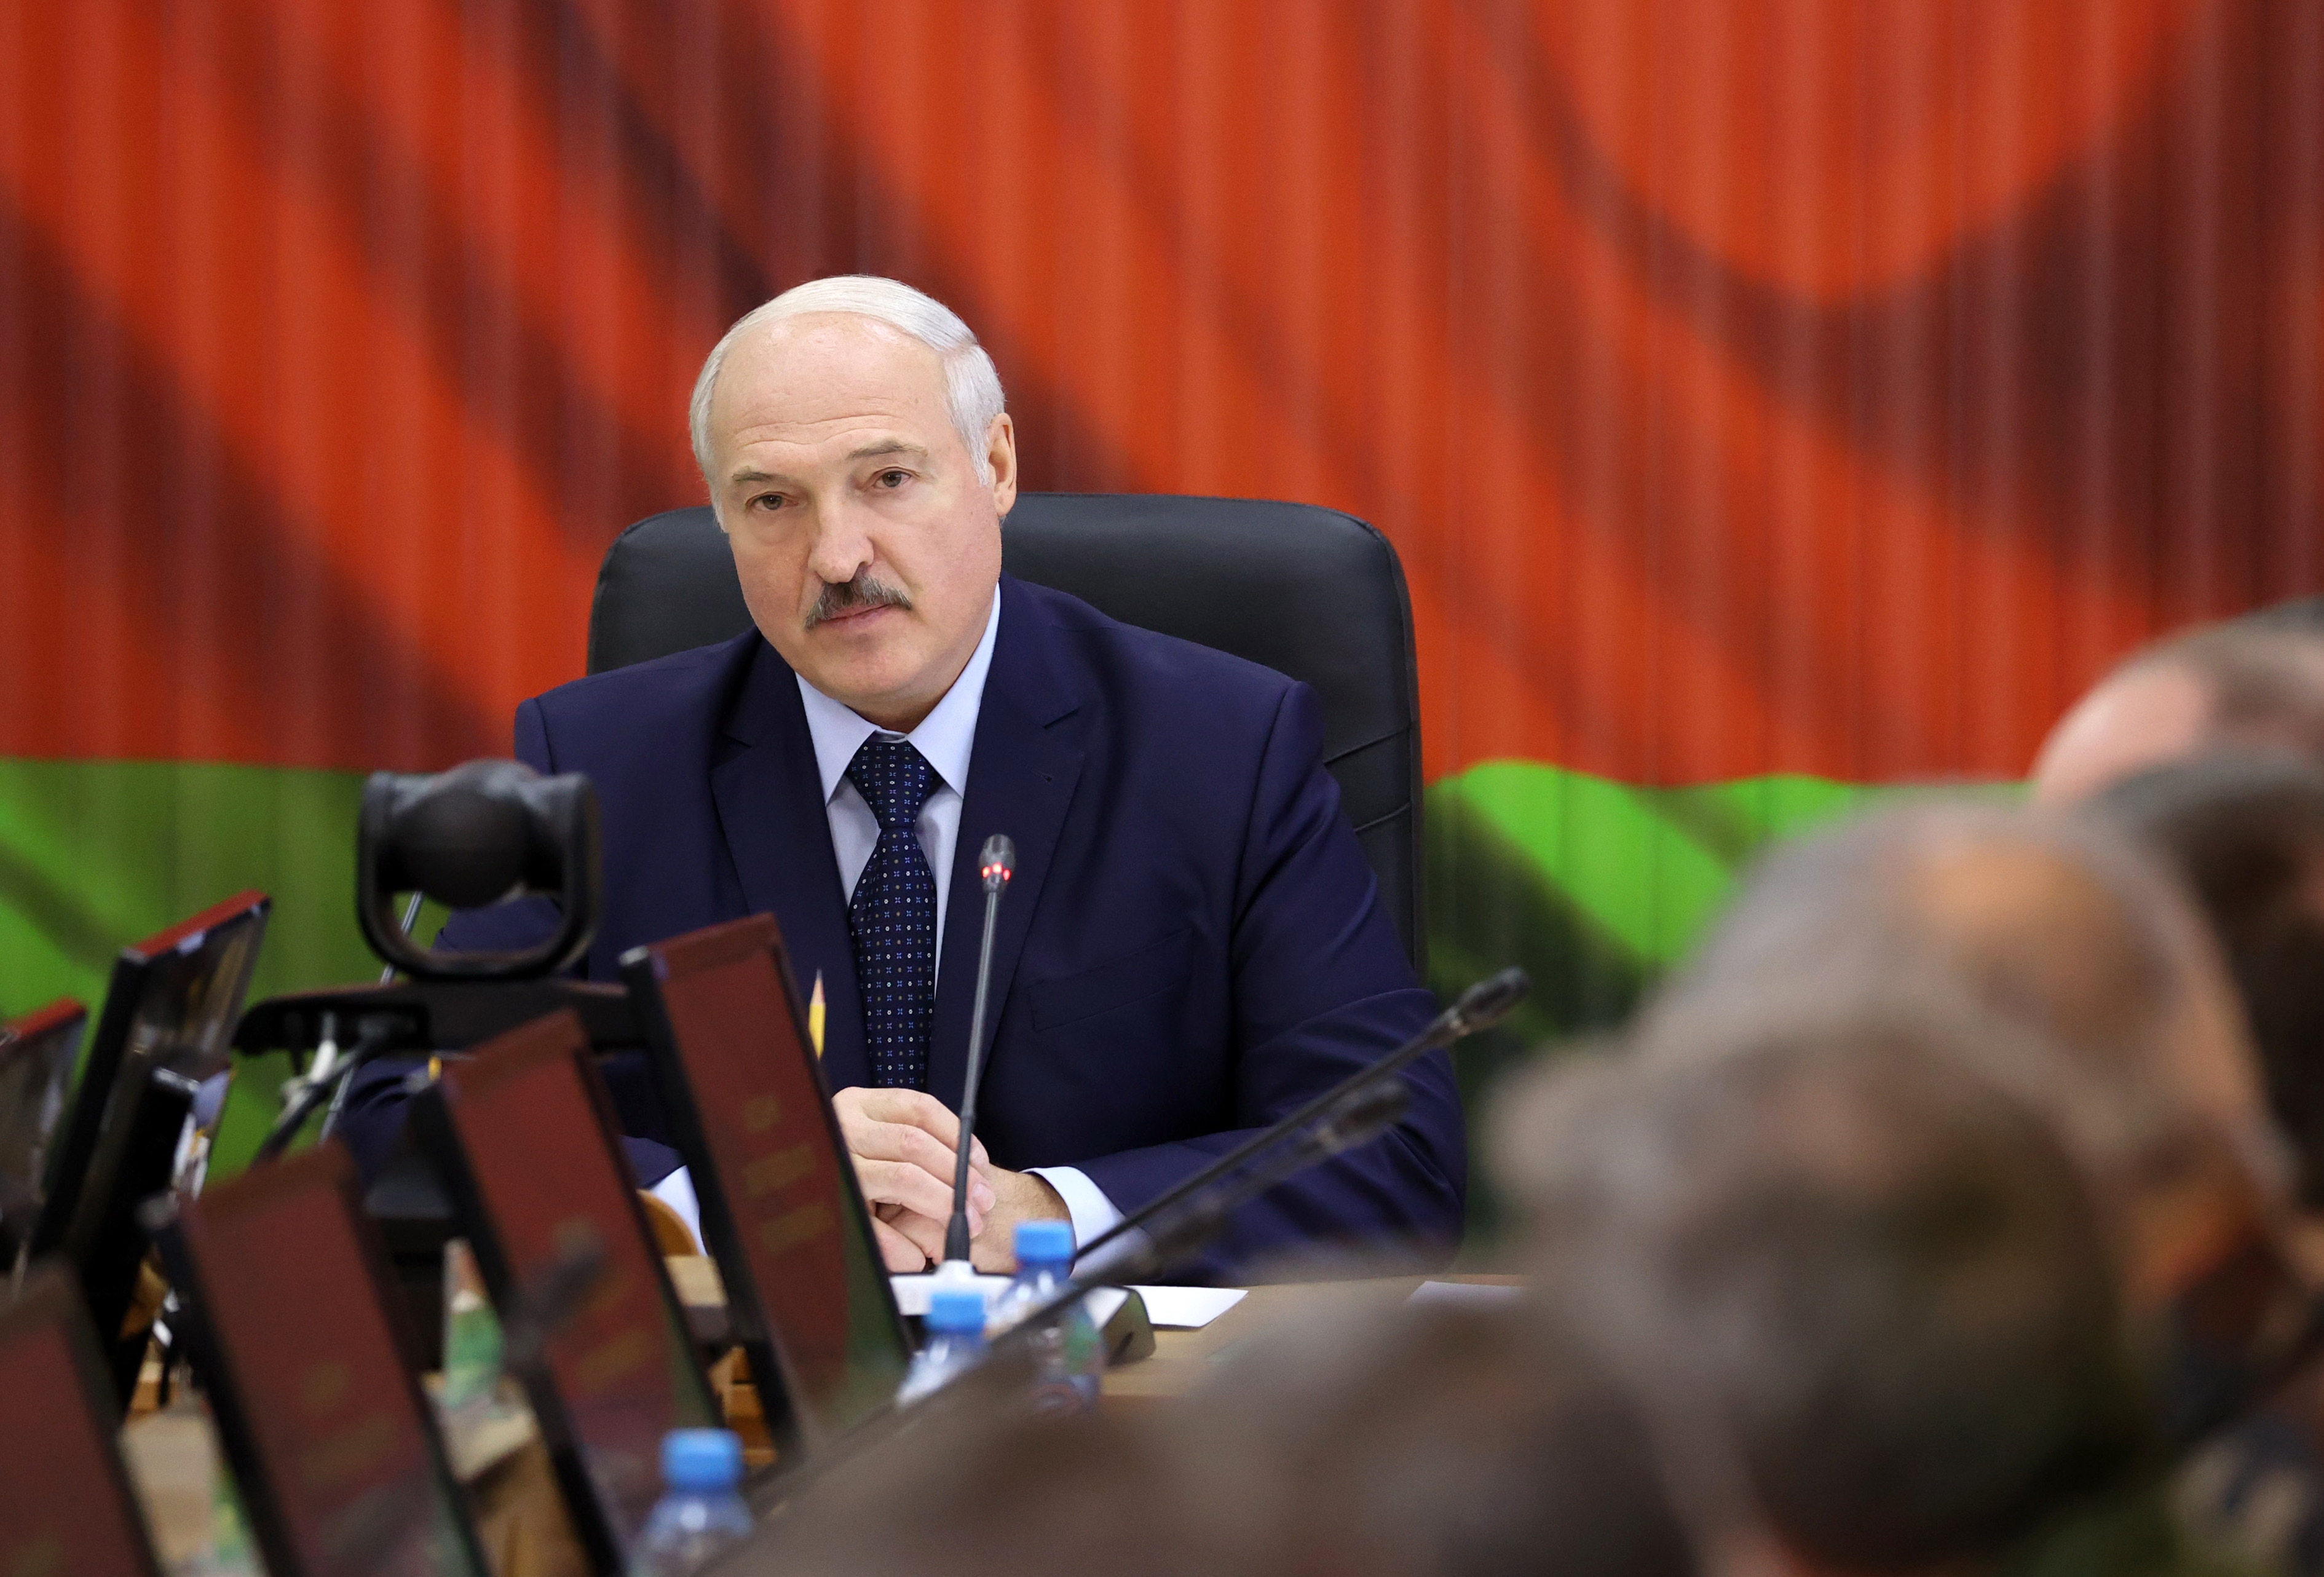 عقد رئيس بيلاروسيا ألكسندر لوكاشينكو اجتماعا في مركز الإدارة الإستراتيجية بوزارة الدفاع البيلاروسية في 15 أغسطس.